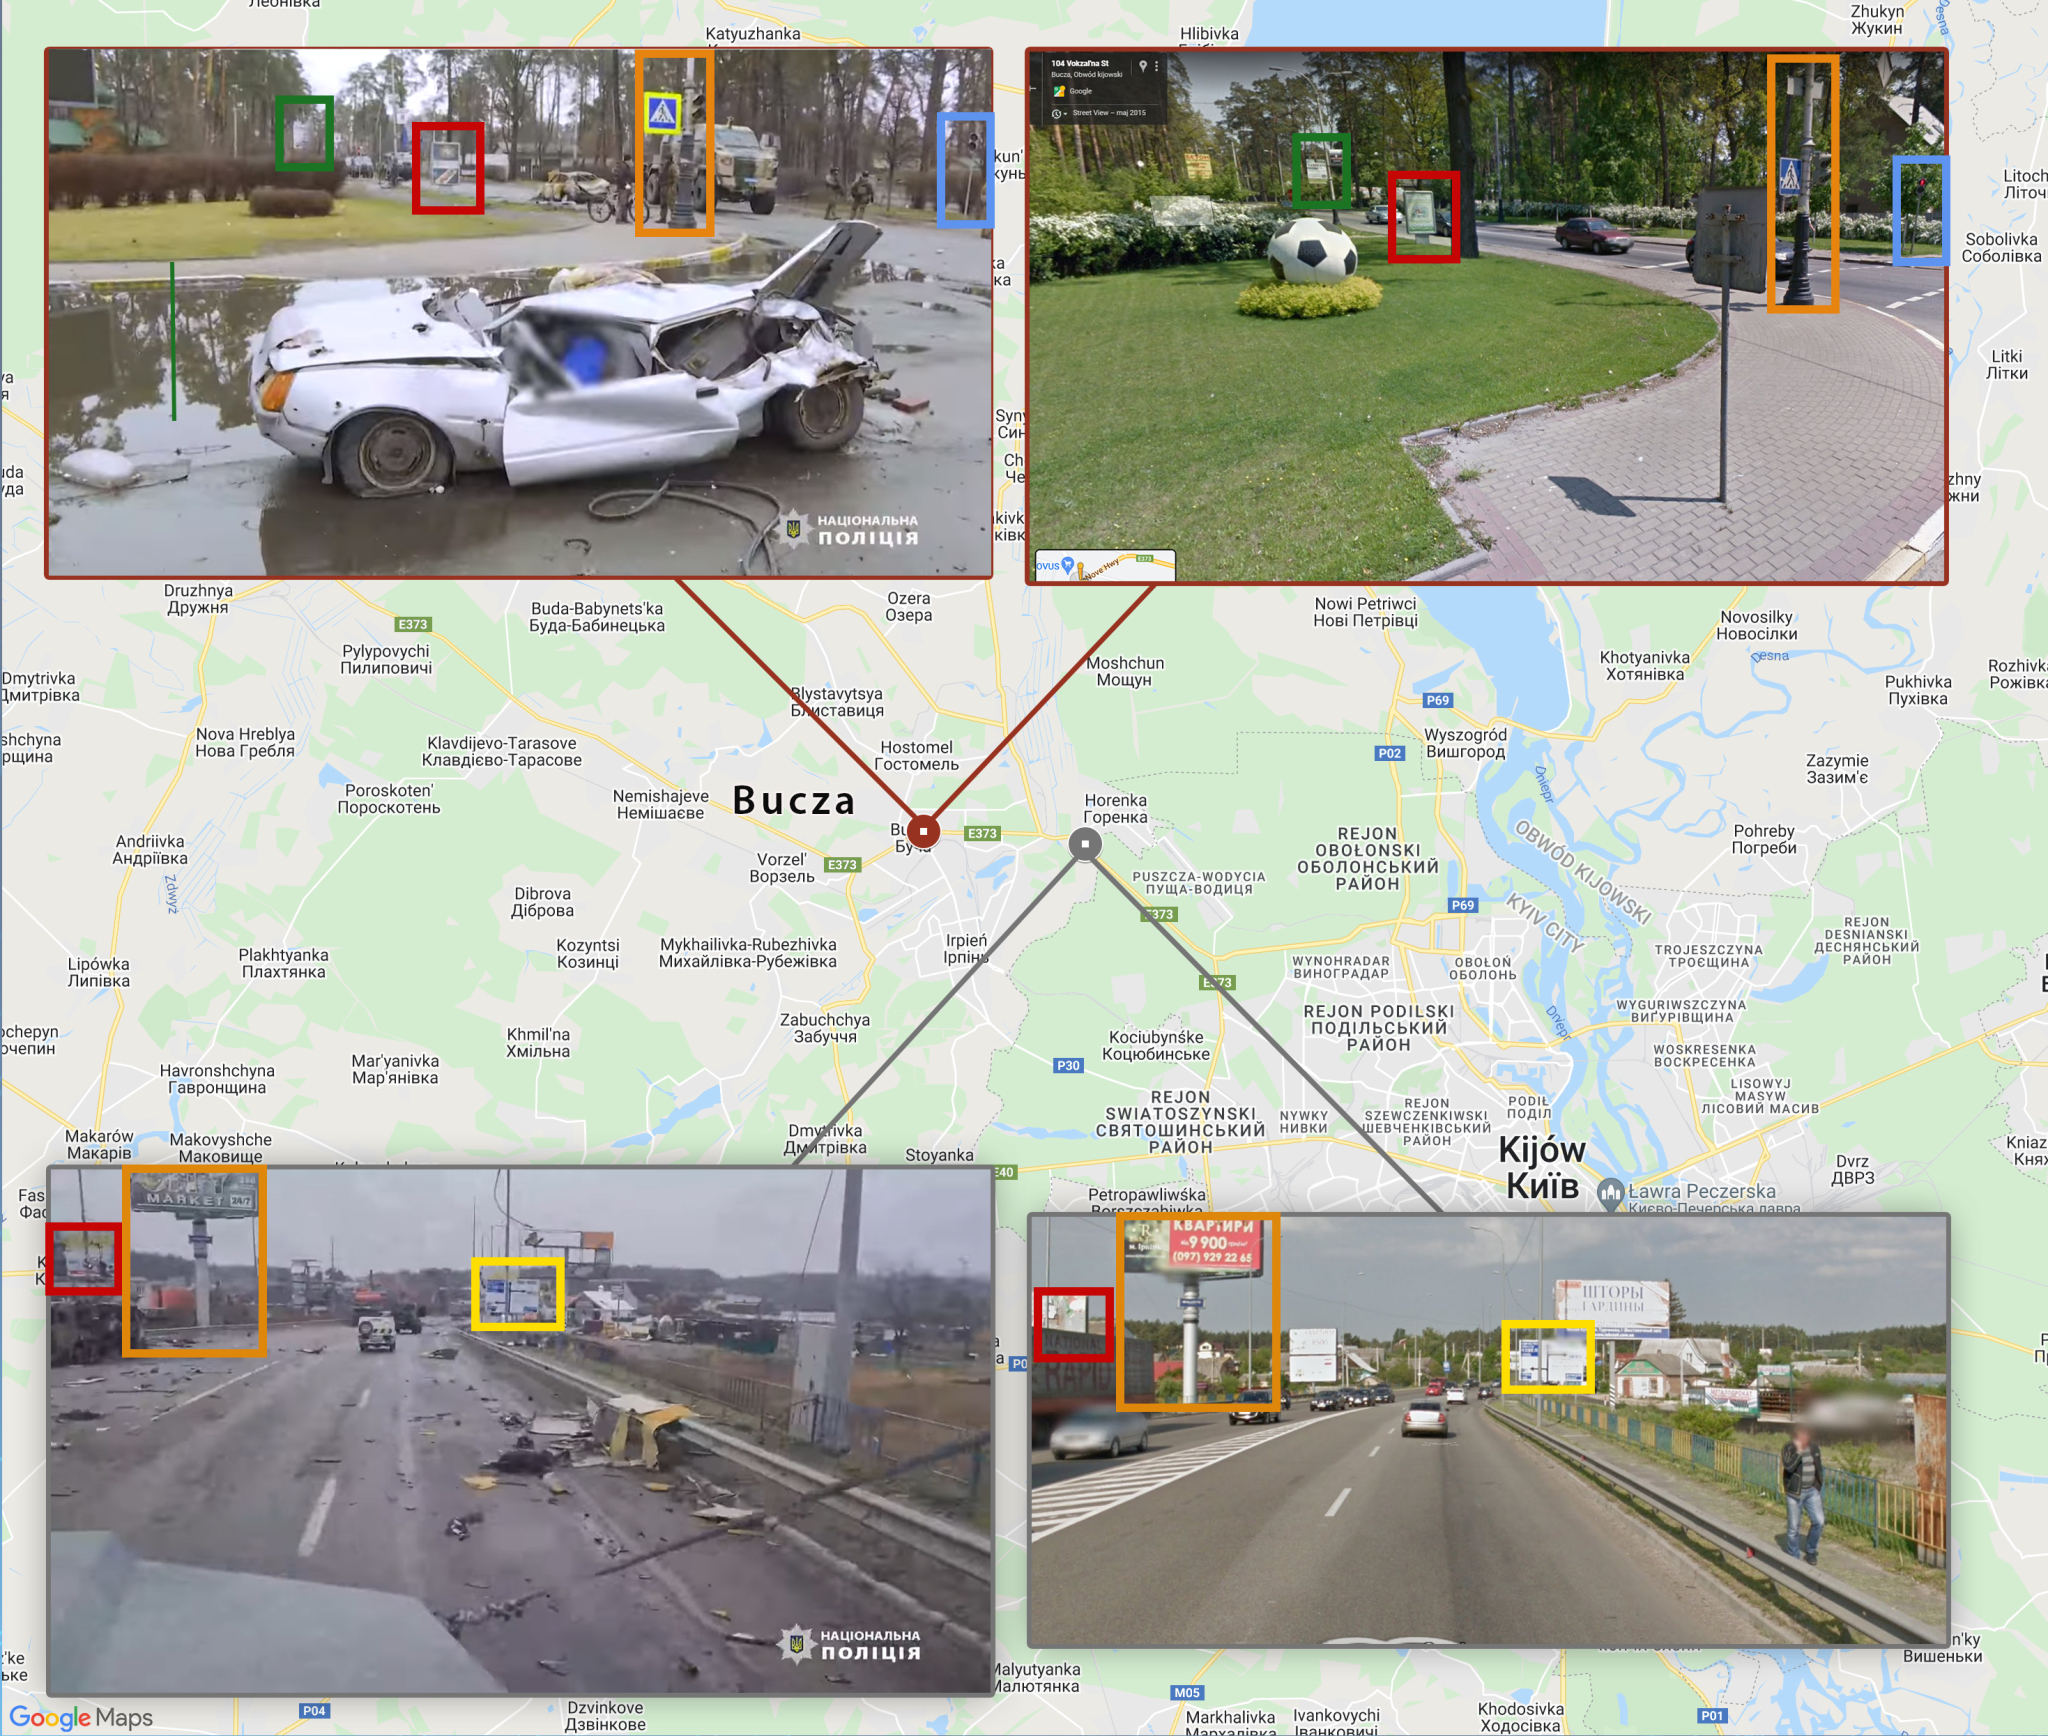 Sprawdziliśmy trasę pokazaną na filmie ukraińskiej policji - zaznaczyliśmy dwa miejsca, gdzie widać było ciała. W Google Maps potwierdziliśmy geolokalizację